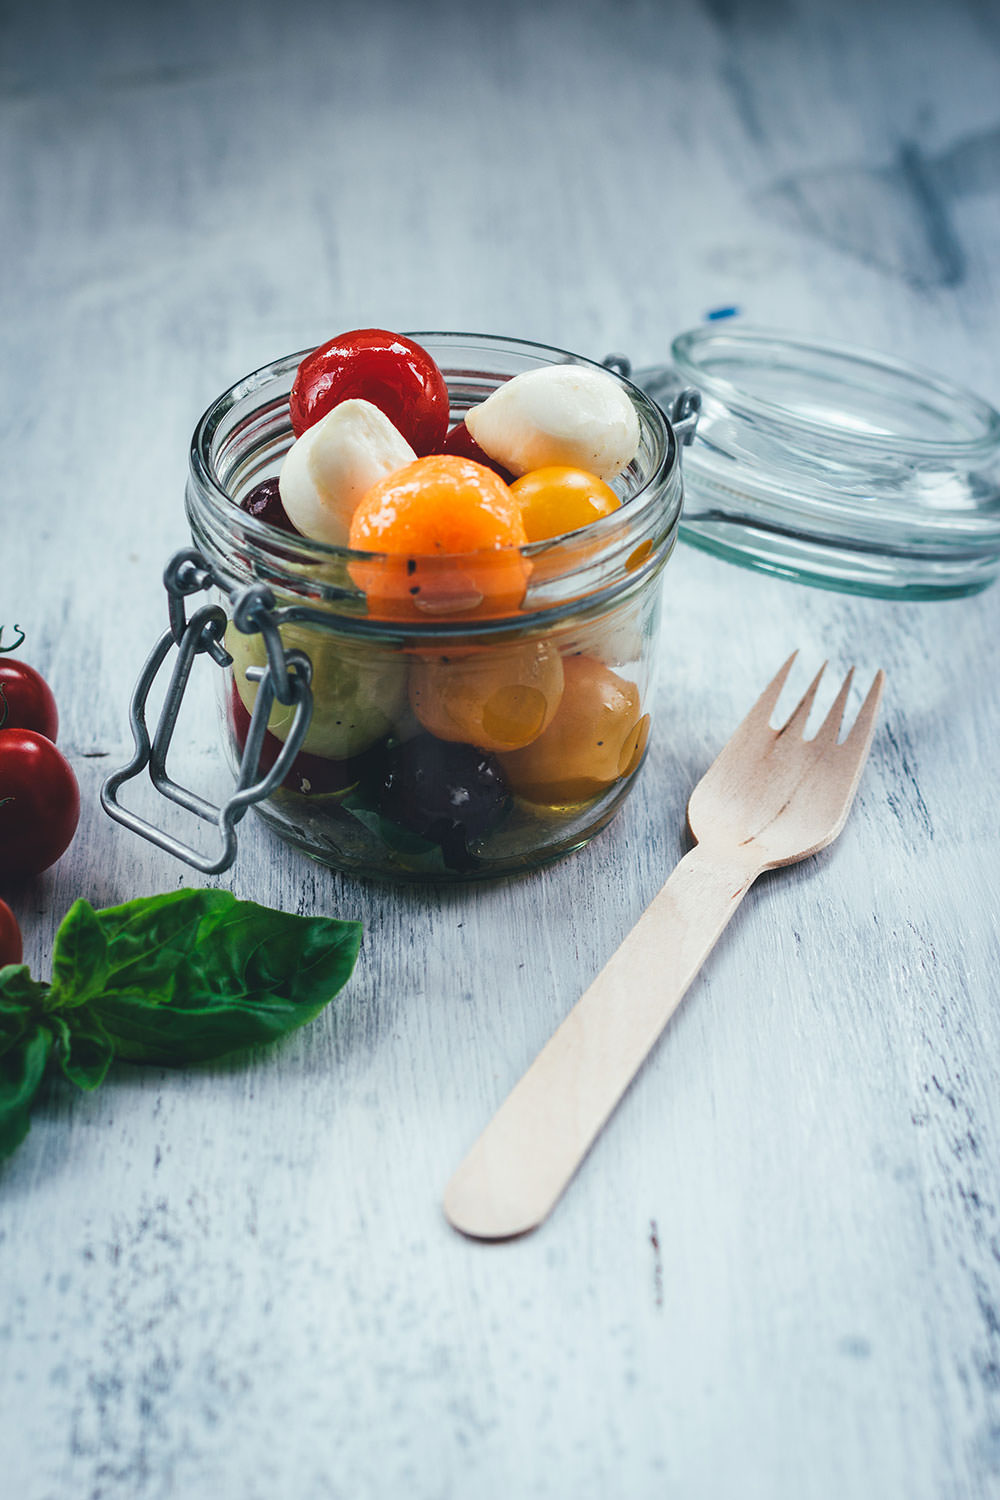 Sommerfrischer Kugelsalat - Das ist Obst und Gemüse in Kugelform ausgestochen, dazu Kirschtomaten, Mozzarellakugeln, Trauben usw. | Der perfekte Salat für BBQ, Picknick und Buffet | moeyskitchen.com #salat #sommersalat #kugelsalat #sommer #mozzarella #vegetarisch #tomaten #vinaigrette #foodblogger #rezepte #bbq #barbecue #picknick #grillparty